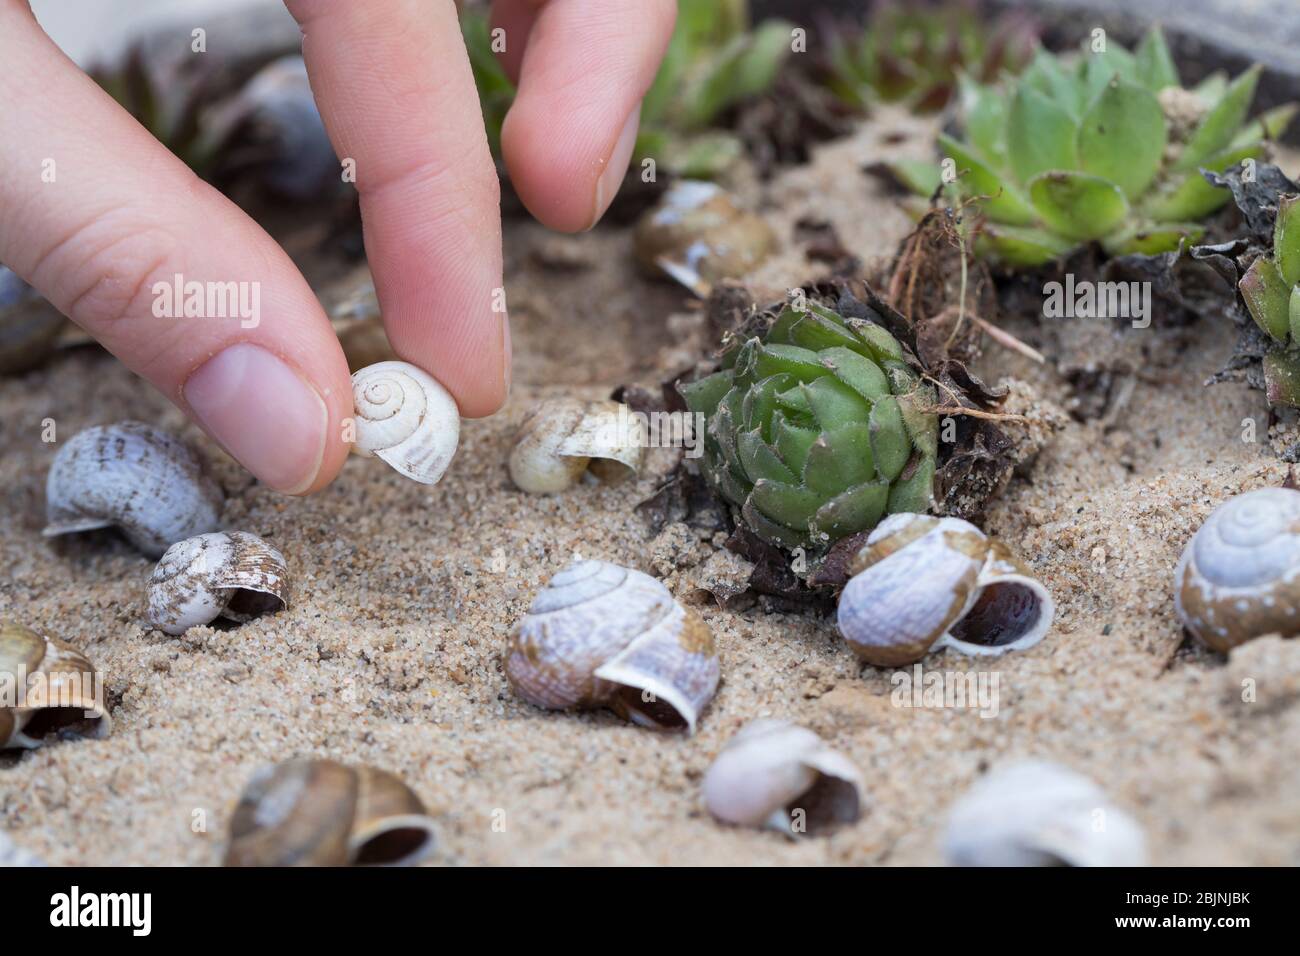 Les coquilles vides de escargot comme aide à la nidification des abeilles sauvages dans un bol rempli de sable, en Allemagne Banque D'Images